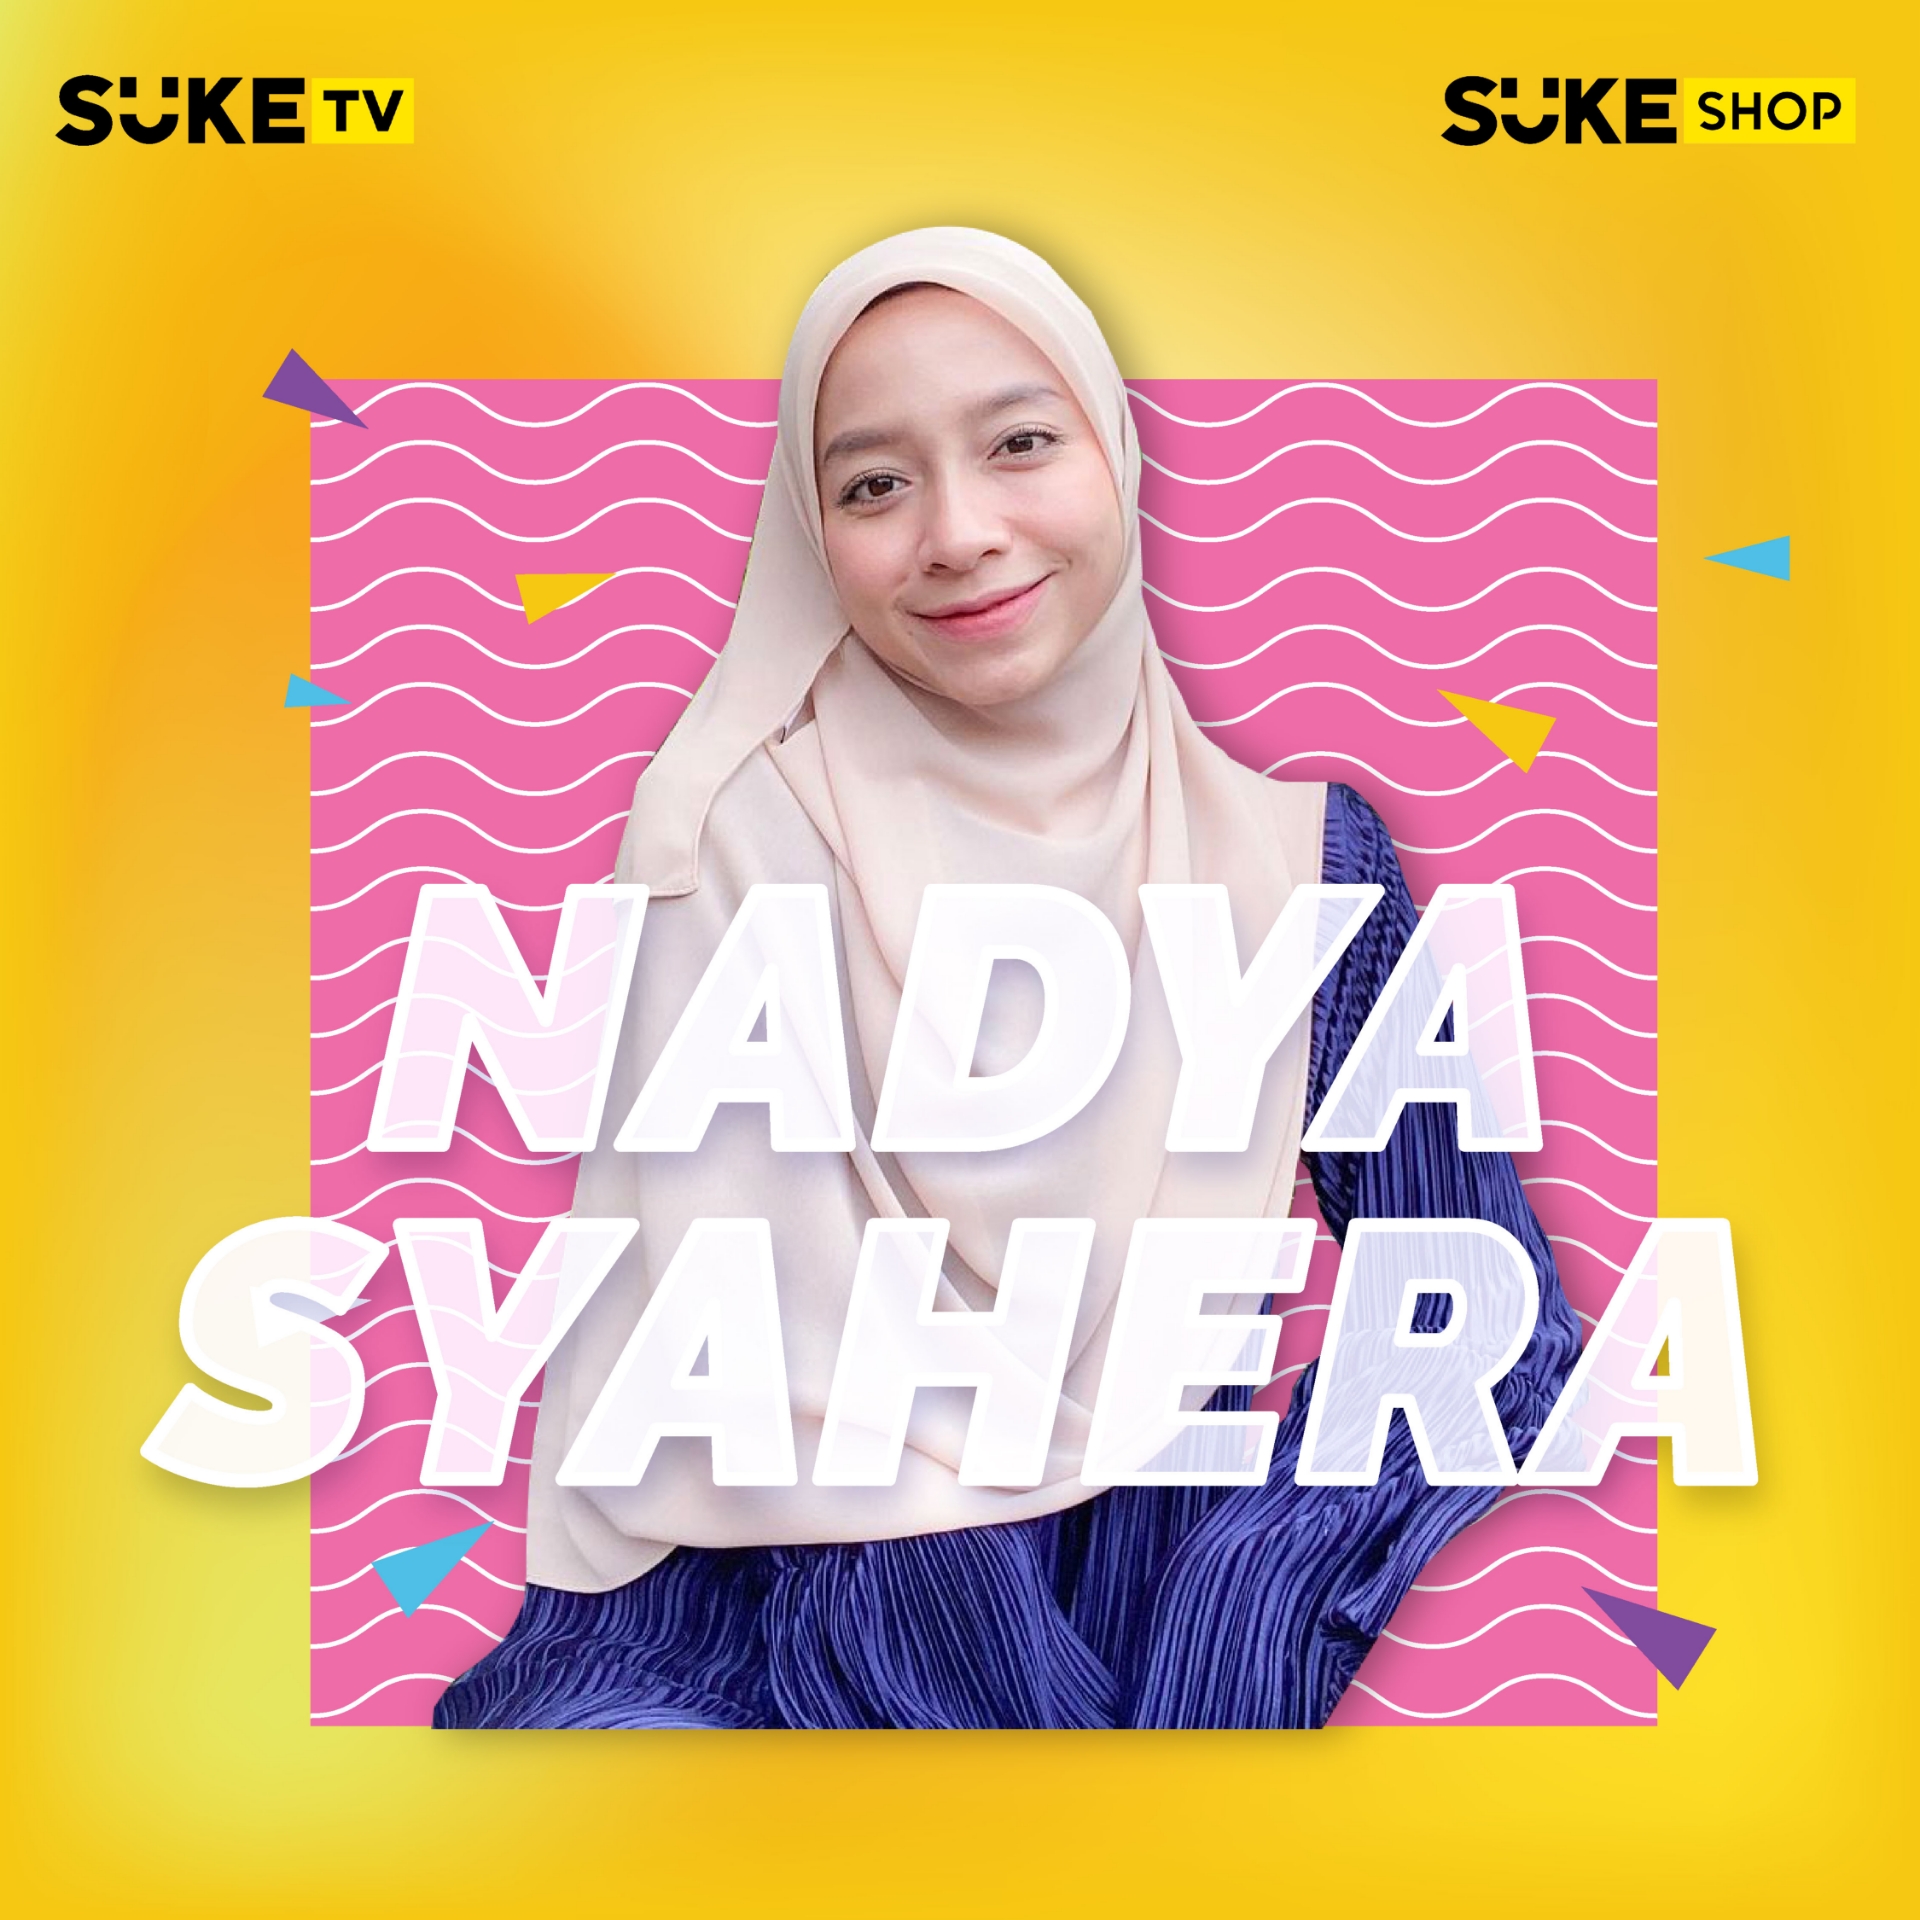 Picture of Nadya Syahera